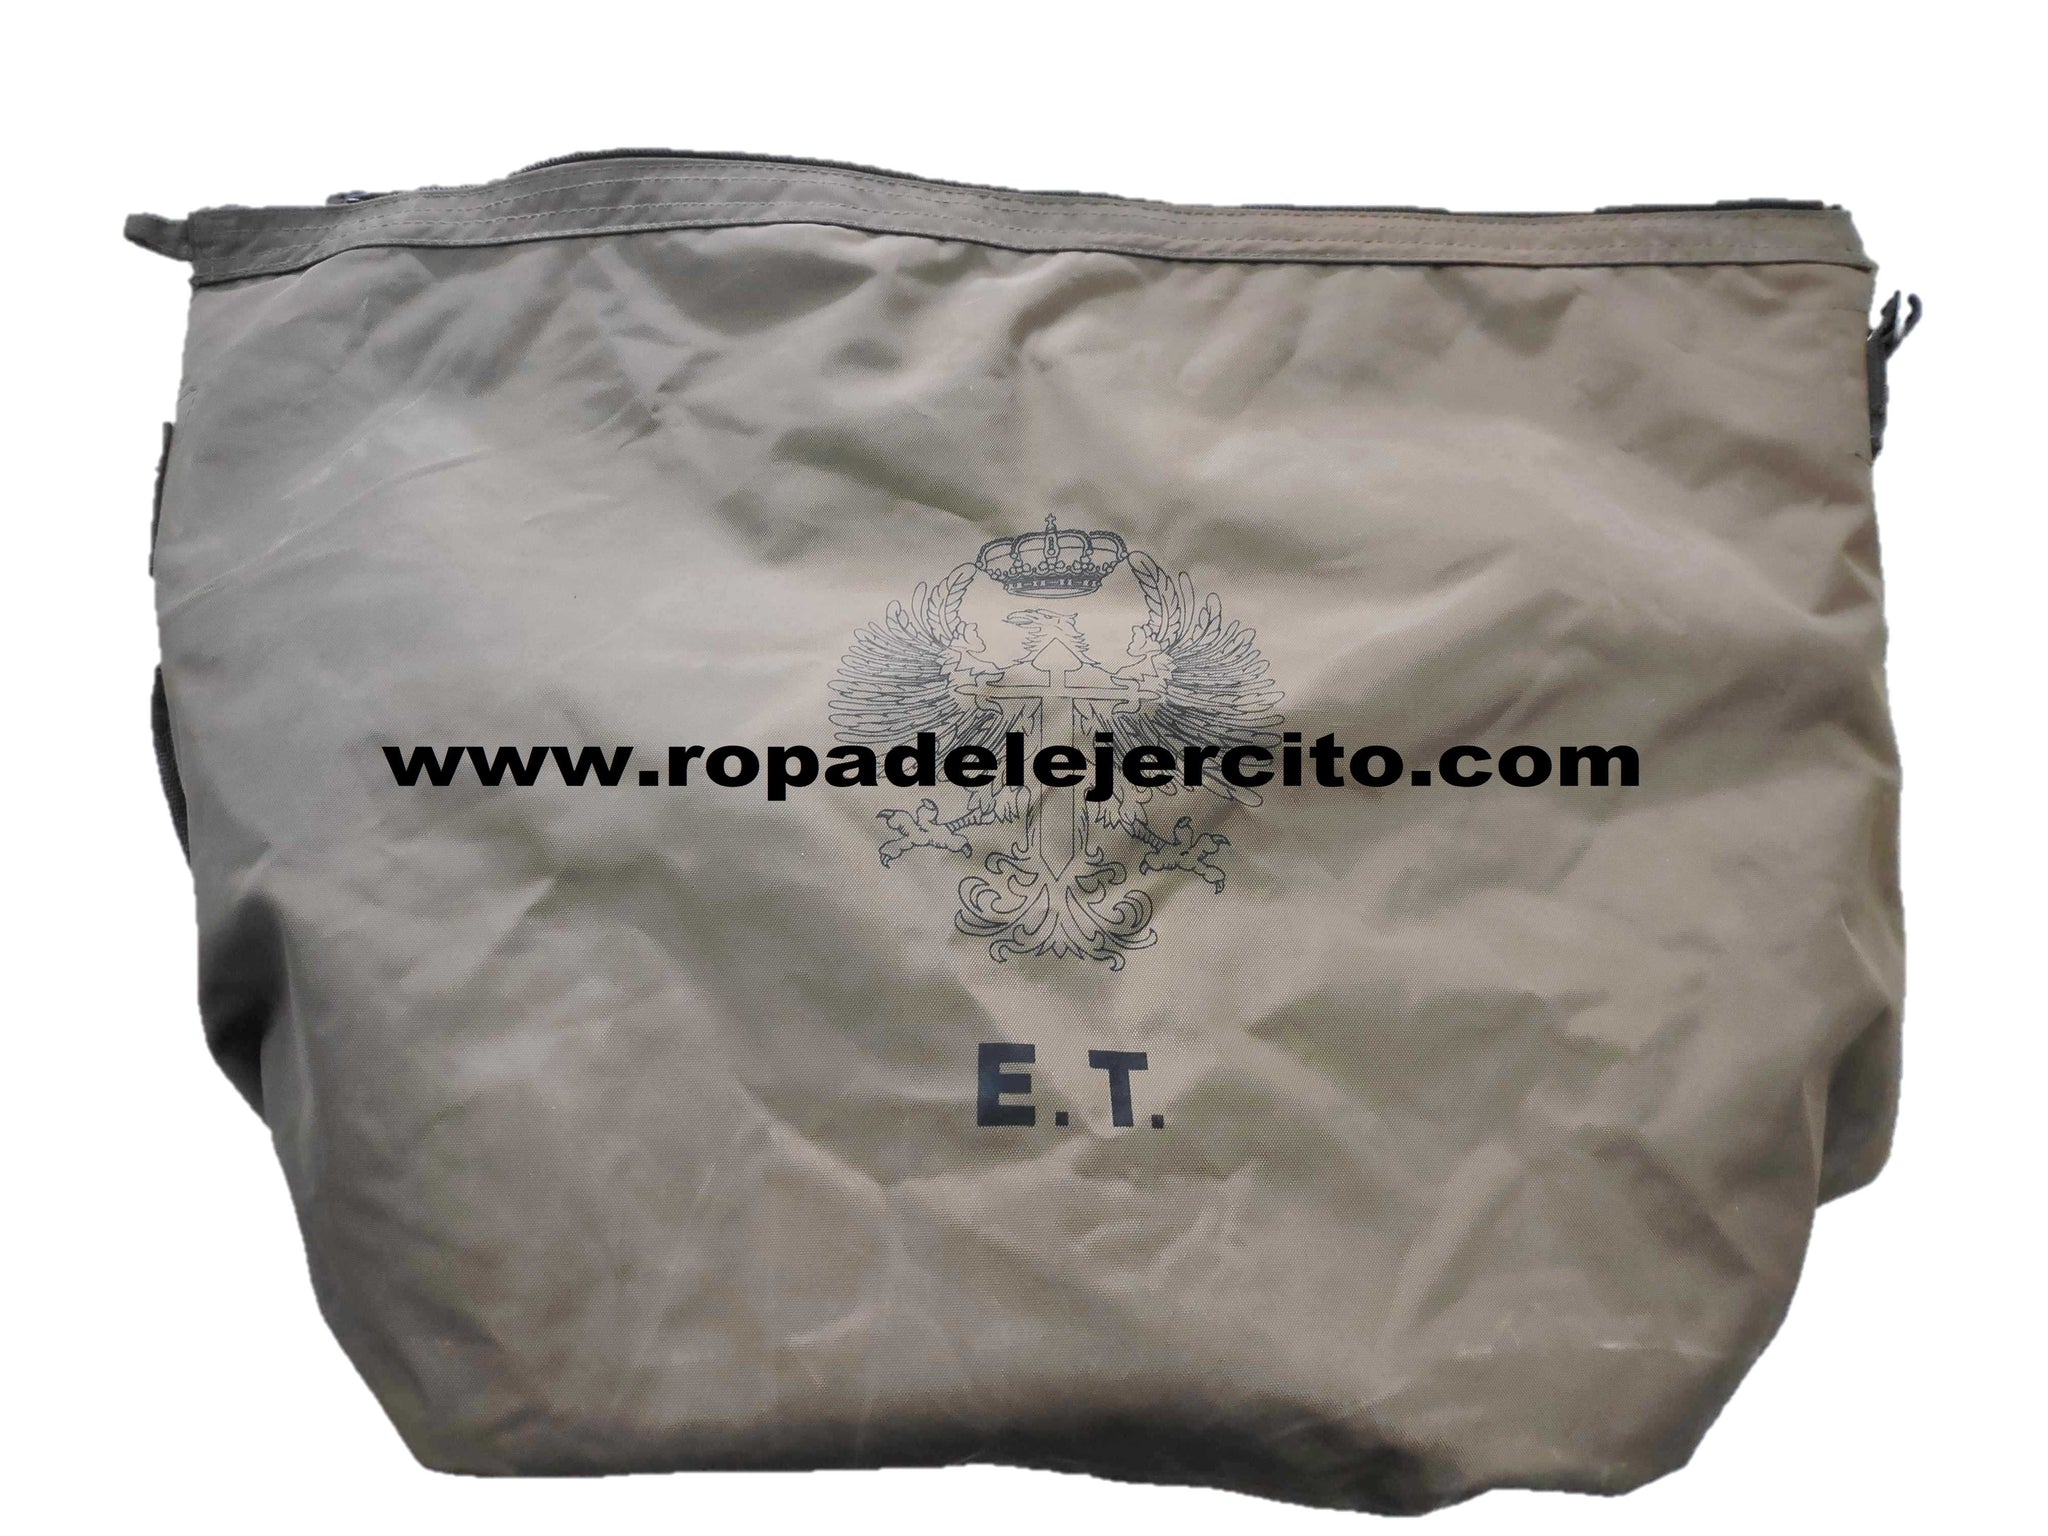 Petate con ropa y complementos de Legionario Ejército Español de Tierra  Años 90.